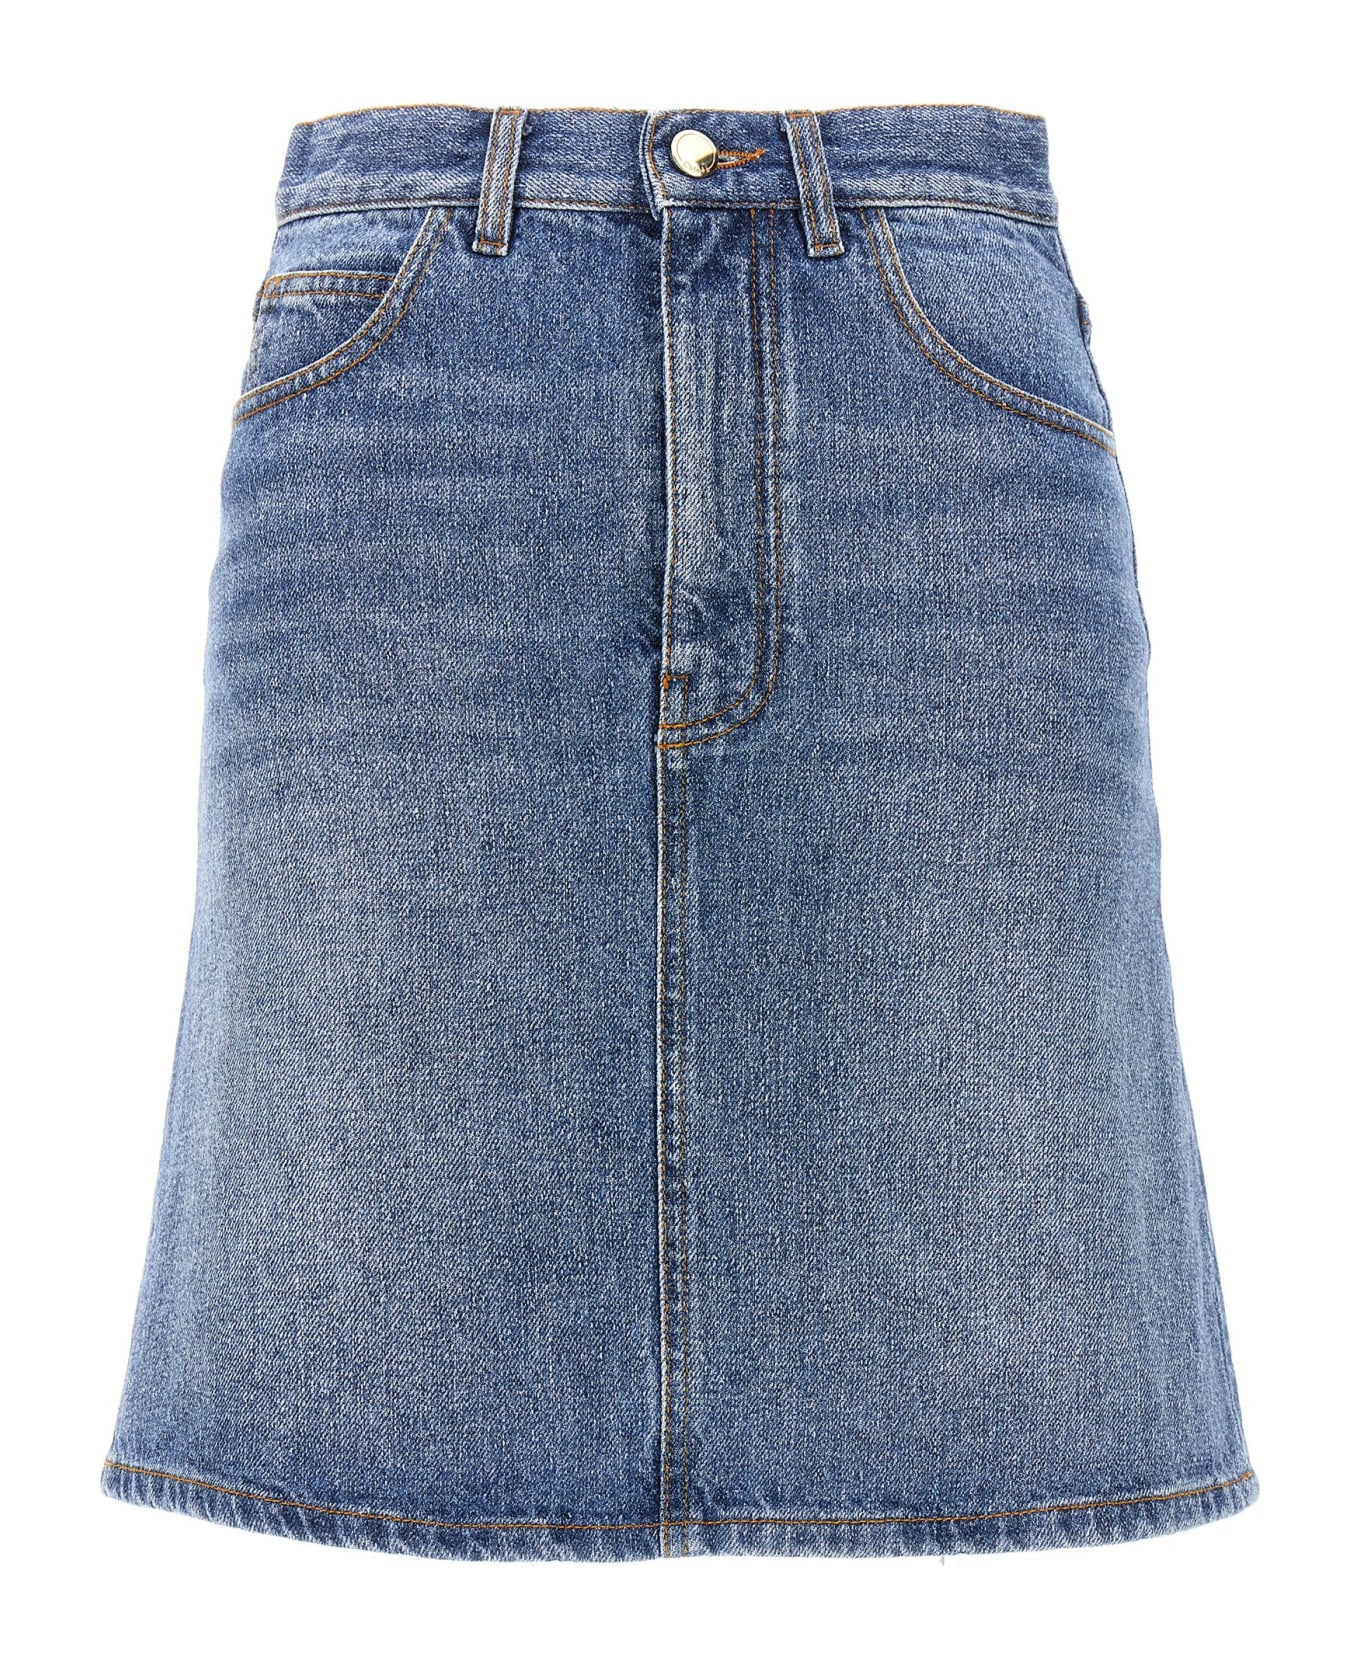 Chloé Denim Mini Skirt - Blue スカート